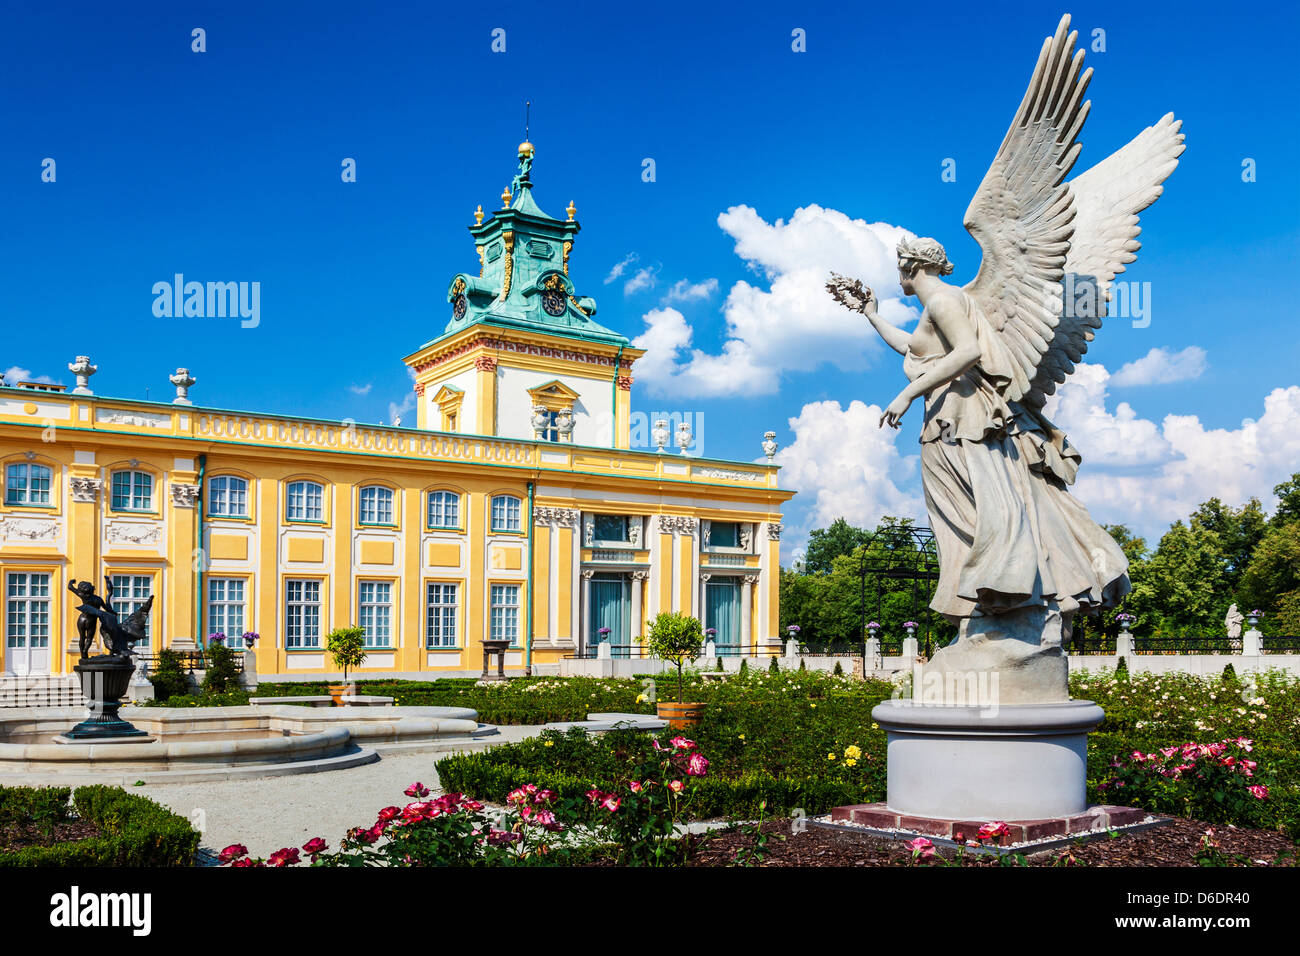 Die angelegten Gärten des 17. Jahrhunderts Wilanów königlichen Palast in Warschau, Polen. Stockfoto